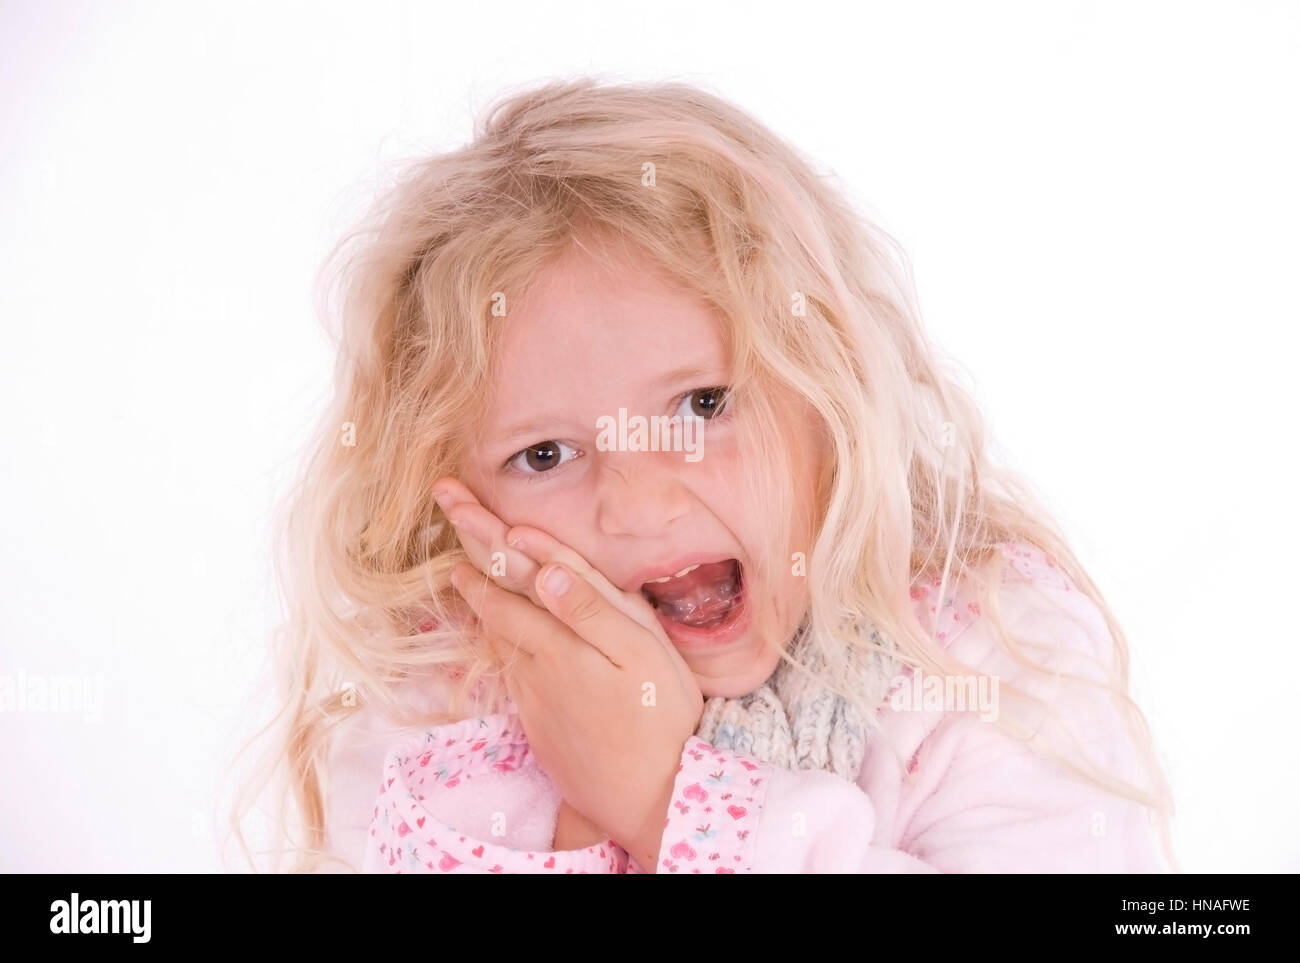 Maedchen, 6 Jahre, mit Zahnschmerzen - girl with toothache Stock Photo